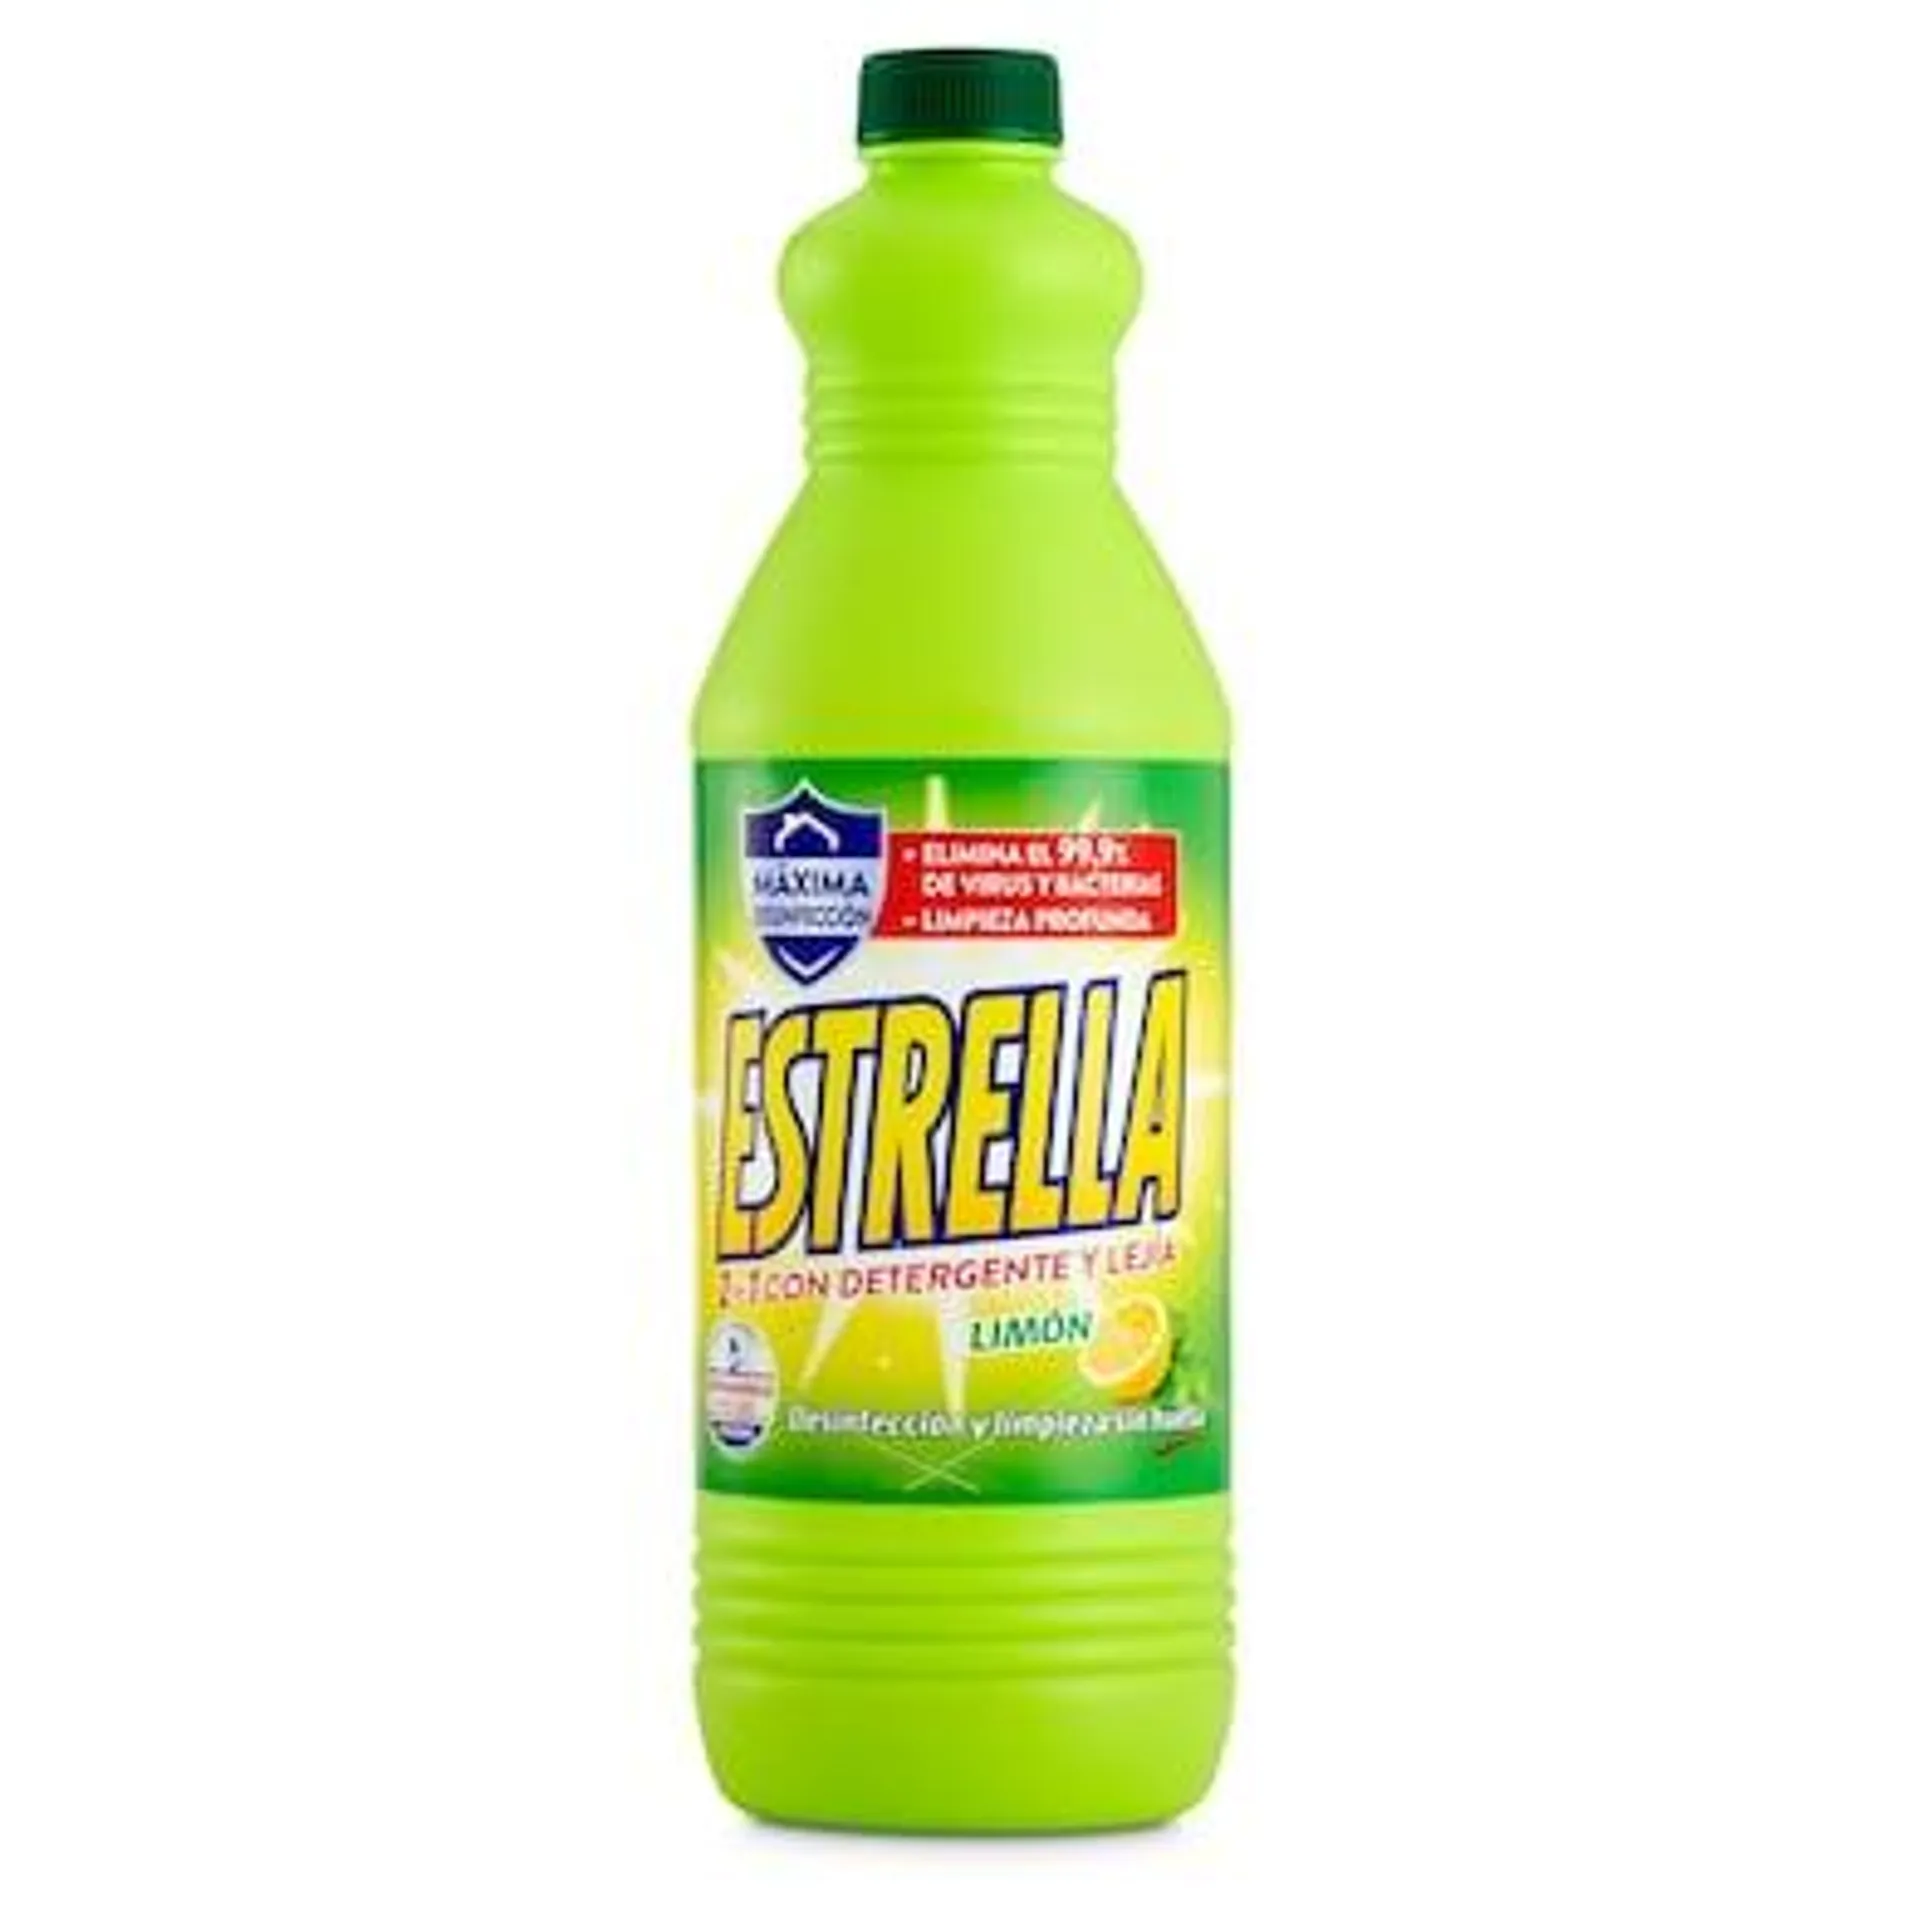 Lejía con detergente limón ESTRELLA BOTELLA 1.43 LT